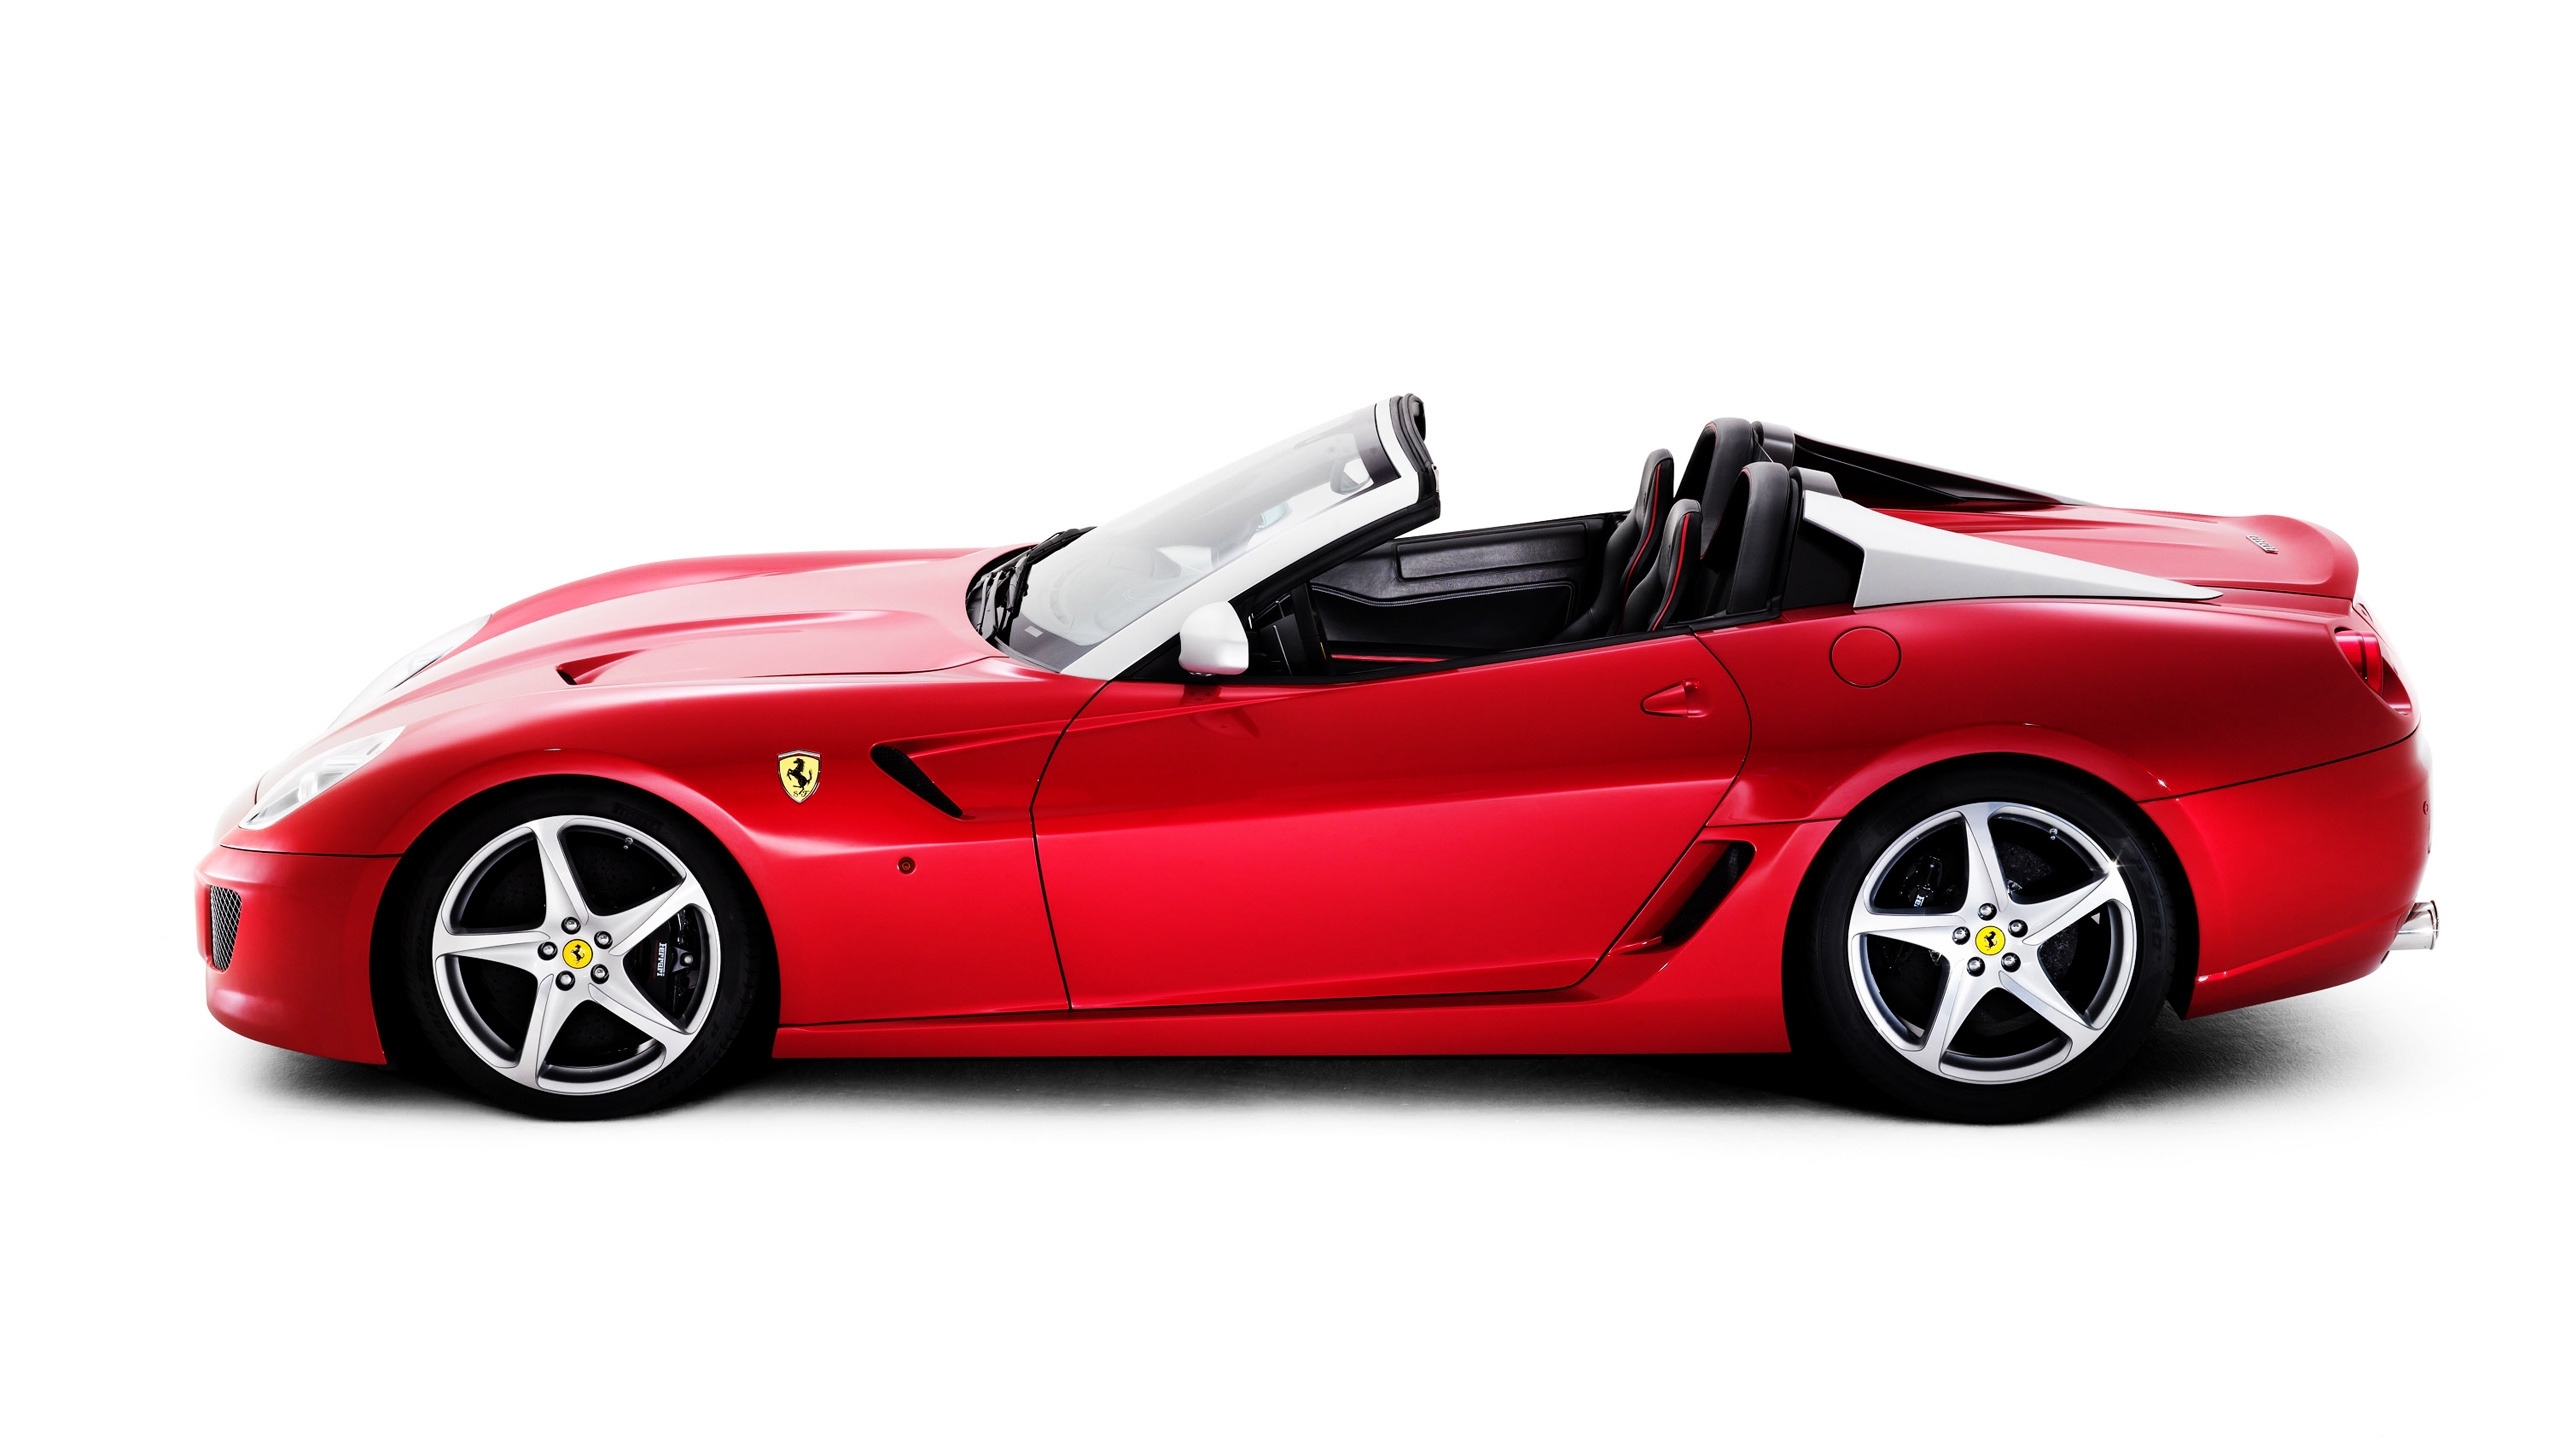 Ferrari SA Aperta Studio for 2560x1440 HDTV resolution